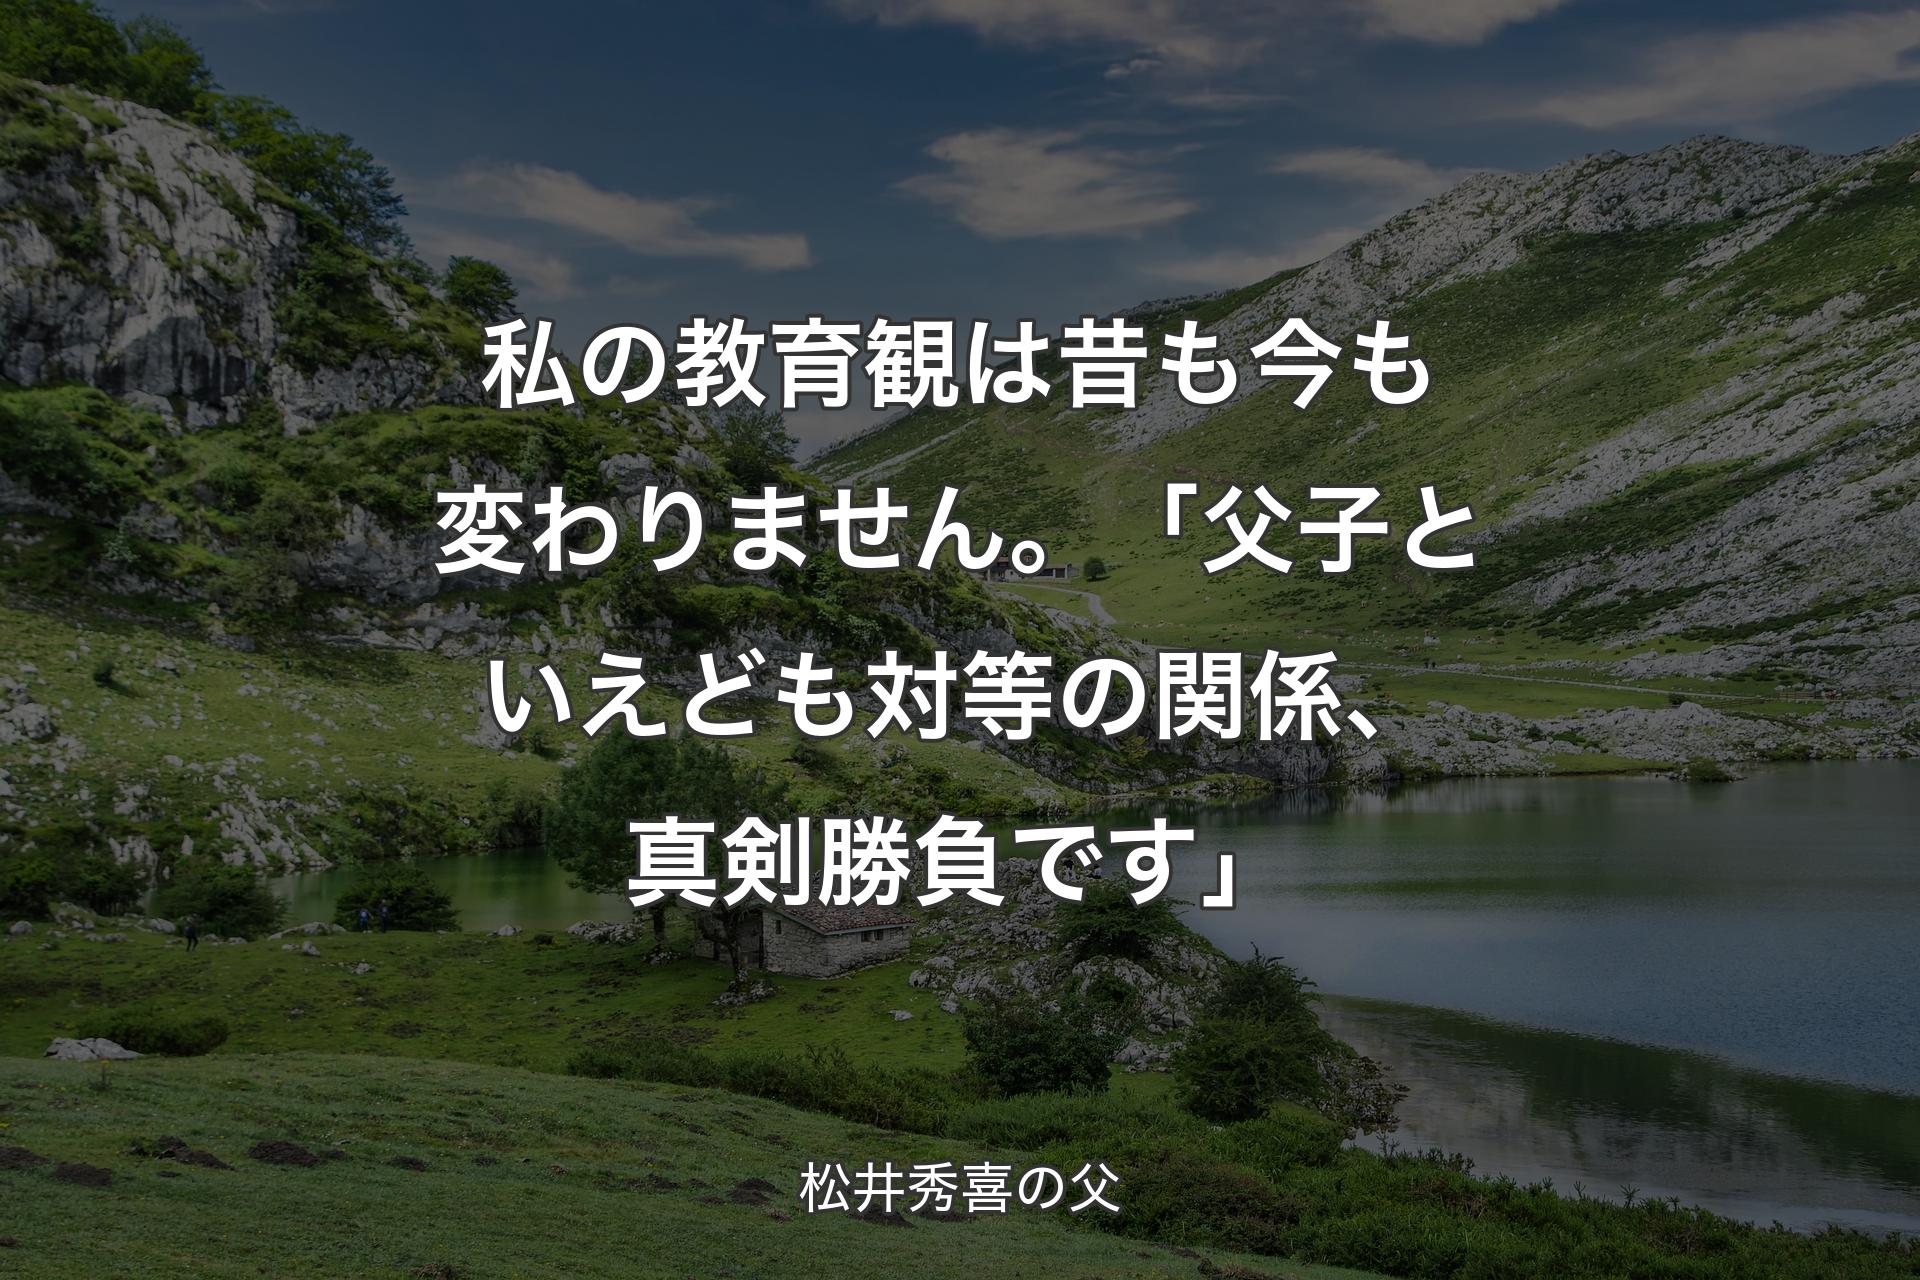 【背景1】私の教育観は昔も今も変わりません。「父子といえども対等の関係、真剣勝負です」 - 松井秀喜の父